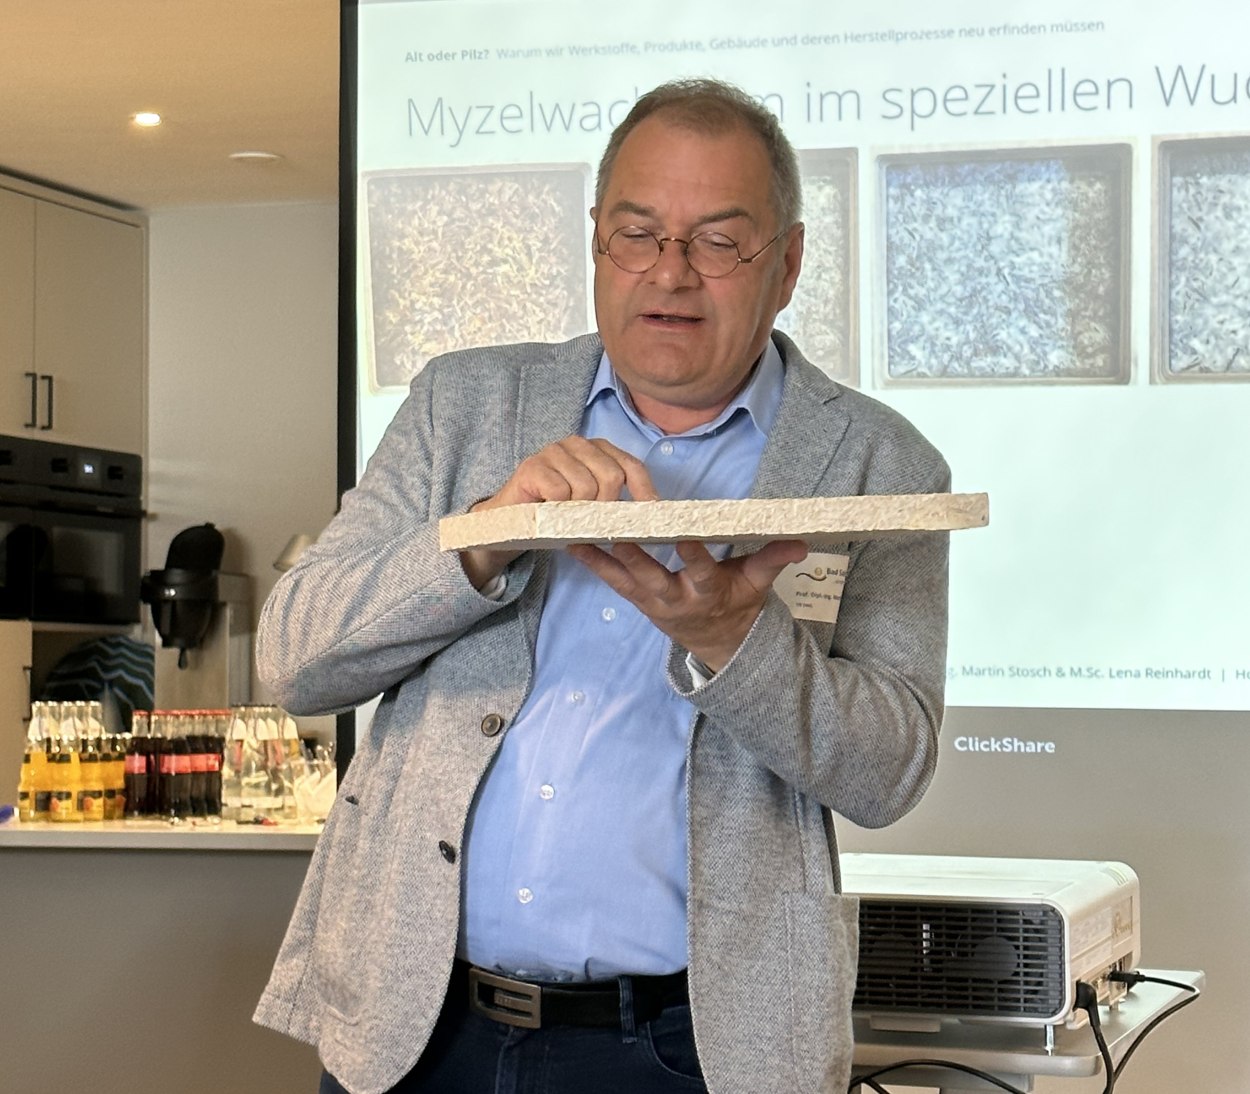 Martin Stosch der TH OWL referiert über das Potential von Pilzen und hält dabei einen neuartigen Baustoff aus eben diesen in die Luft., © Stadt Bad Salzuflen